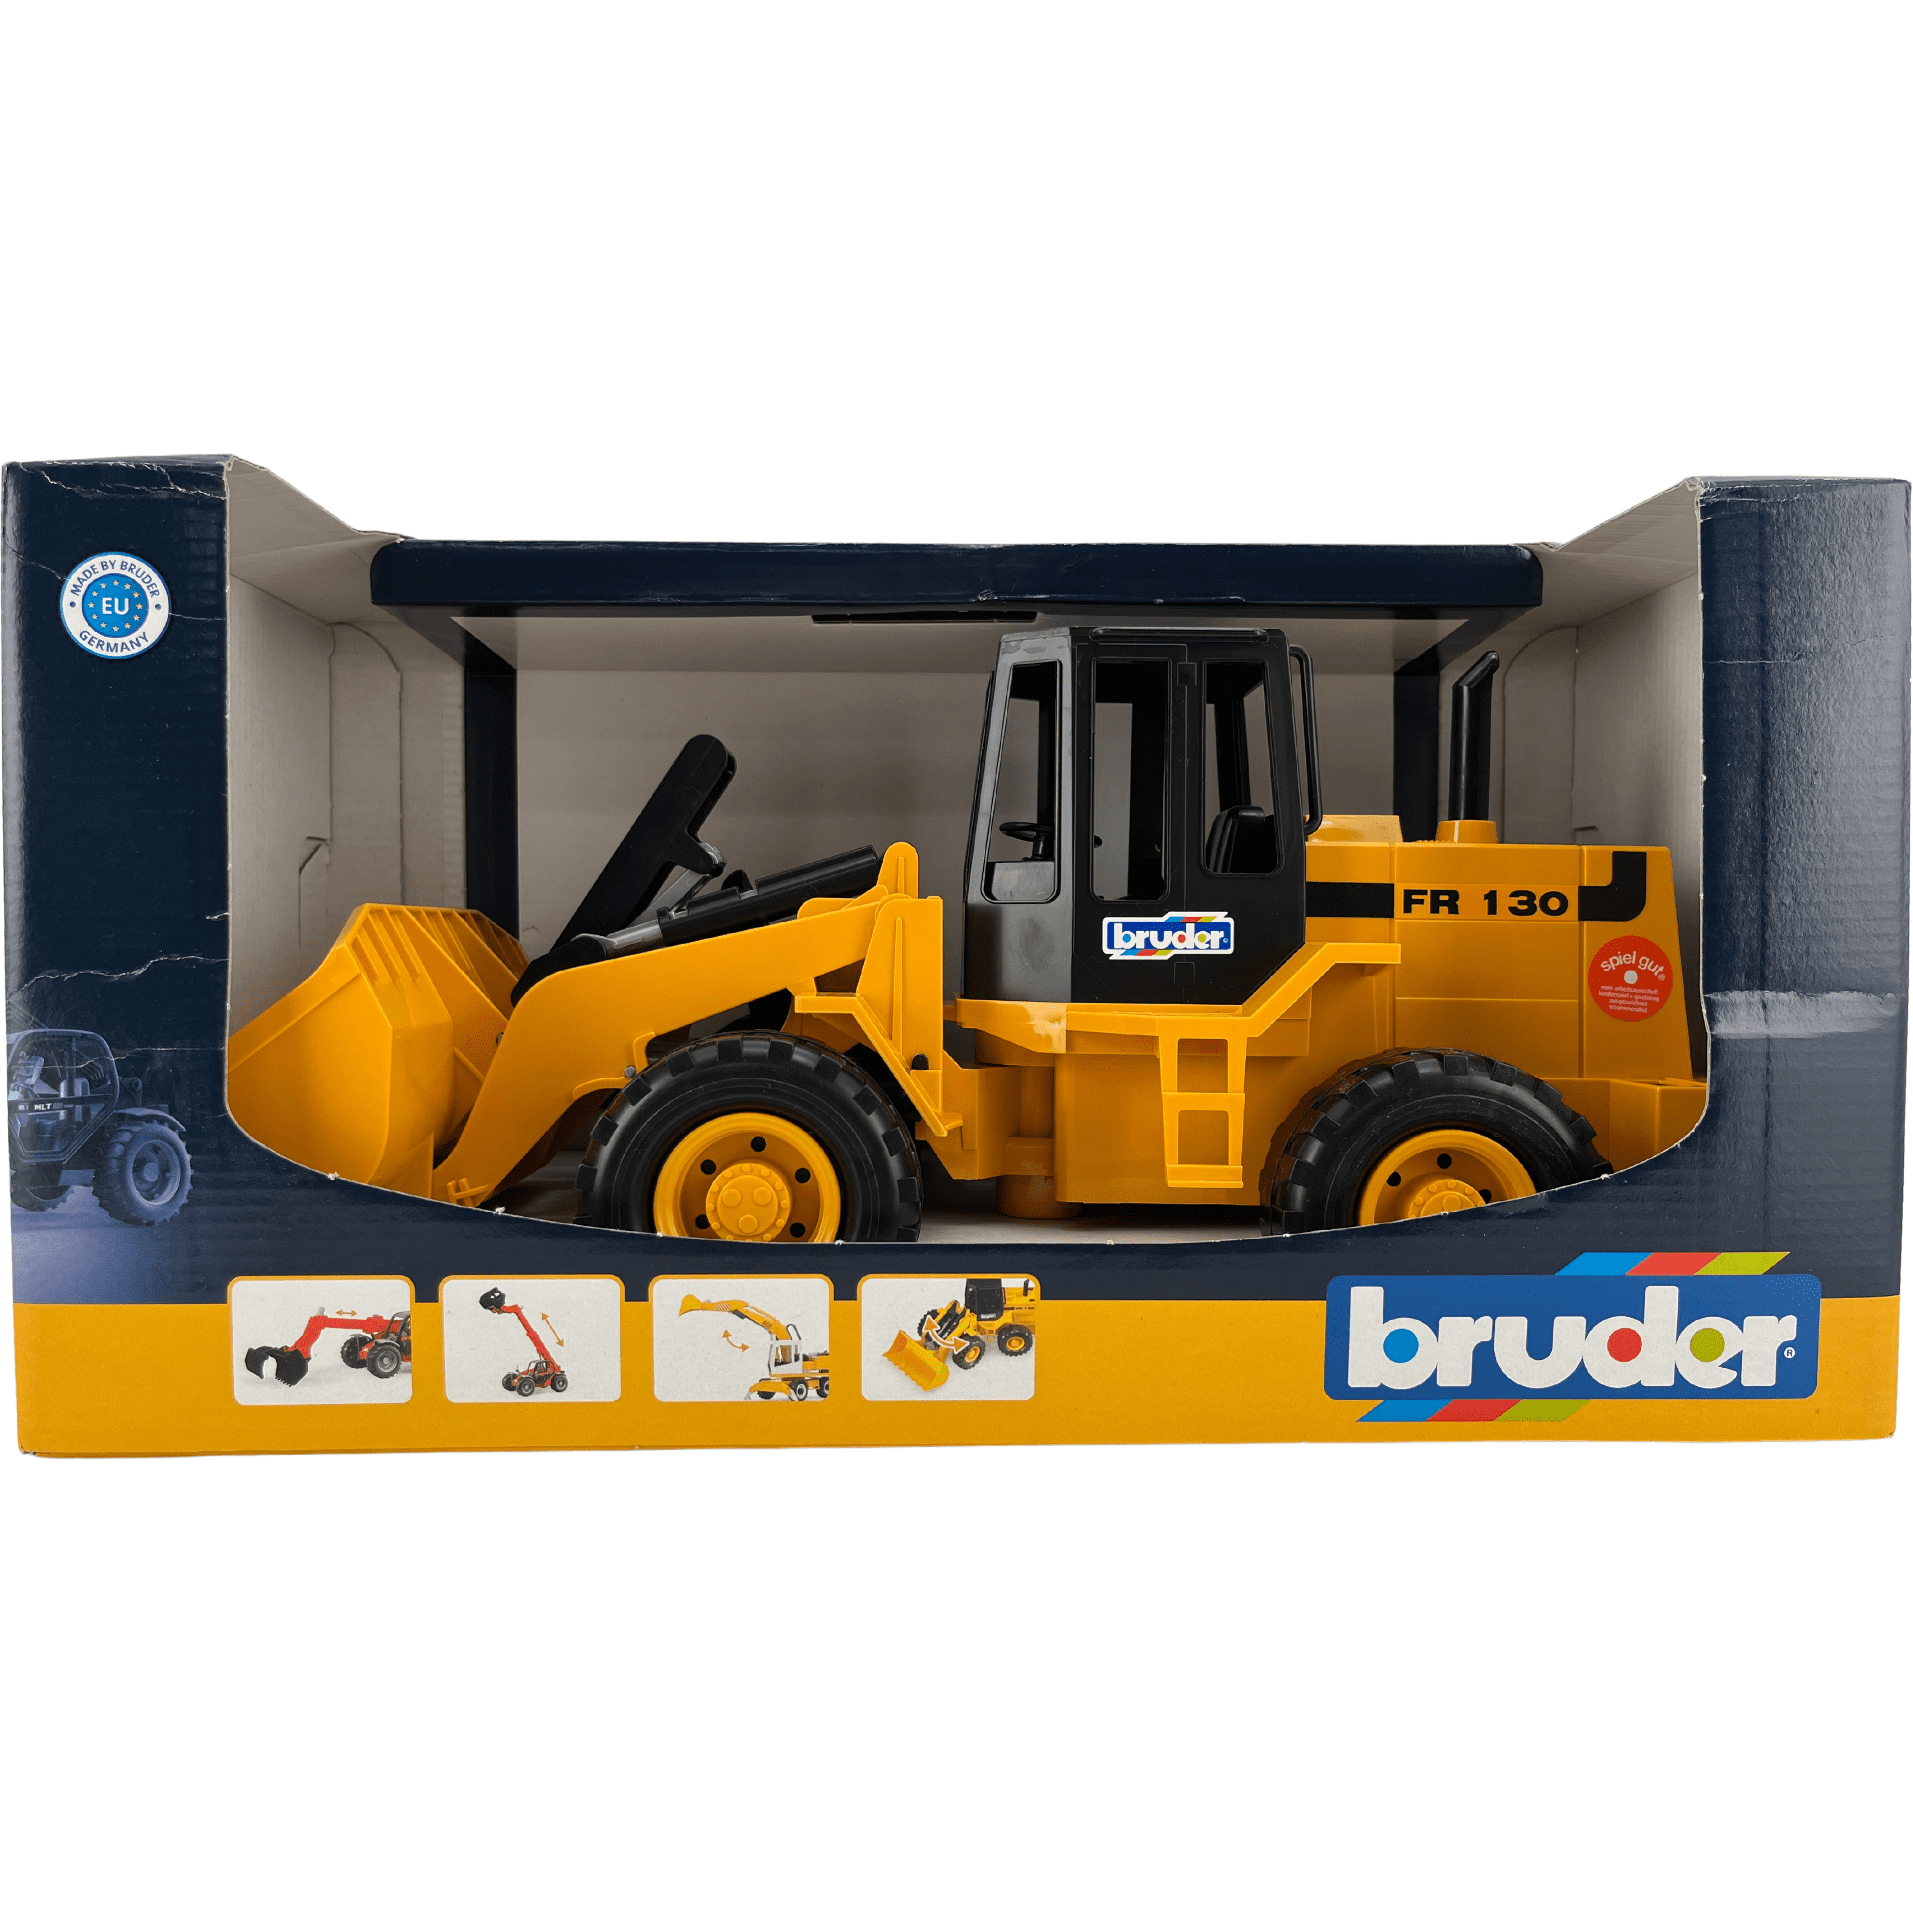 Bruder Construction Machines / Front Loader / FR130 / Loader **DEALS**